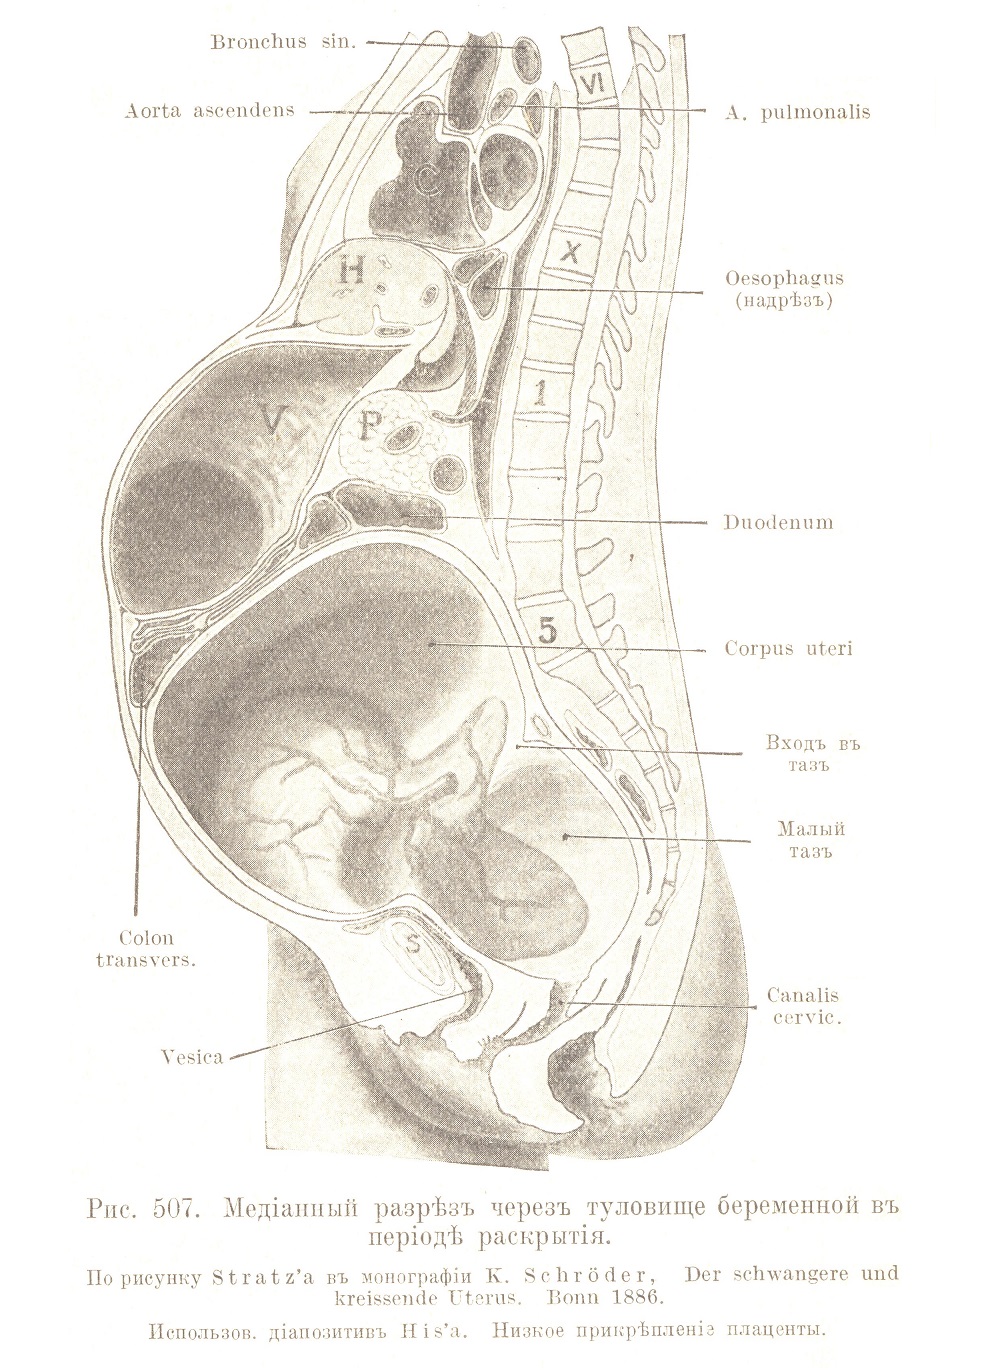 Топографія беременной и пуэрперальной матки